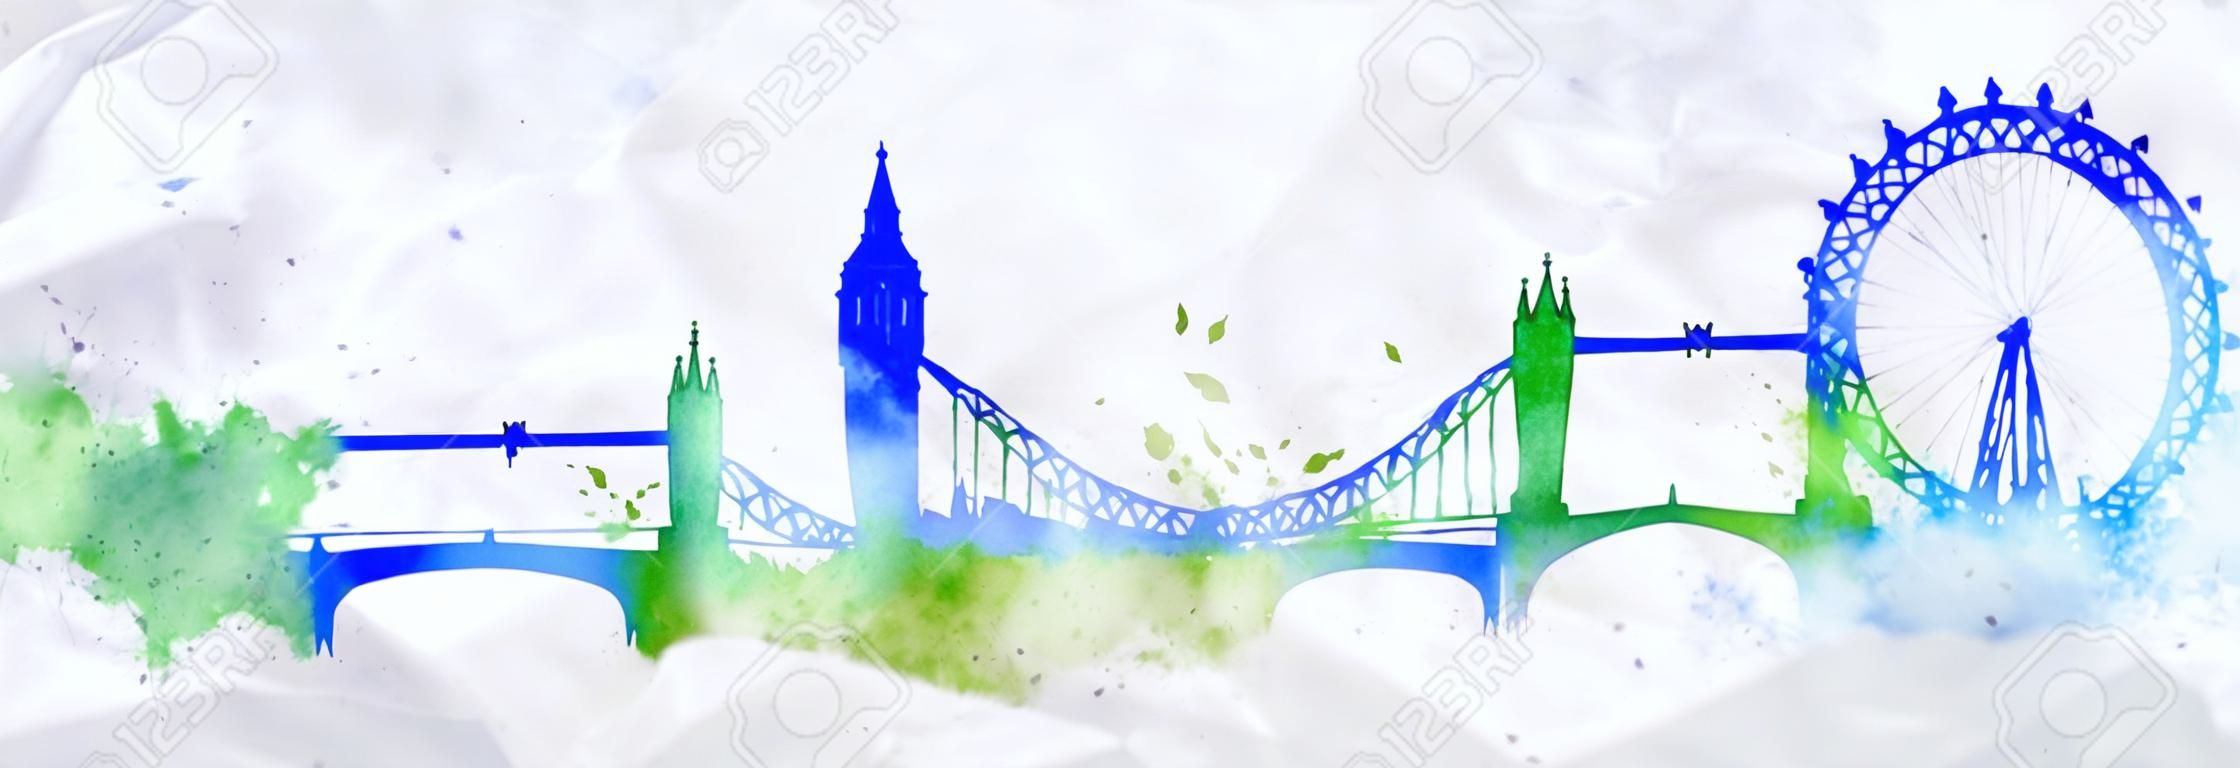 Silhouette ville de Londres peint avec des touches de l'aquarelle gouttes stries sites avec des couleurs bleu-vert